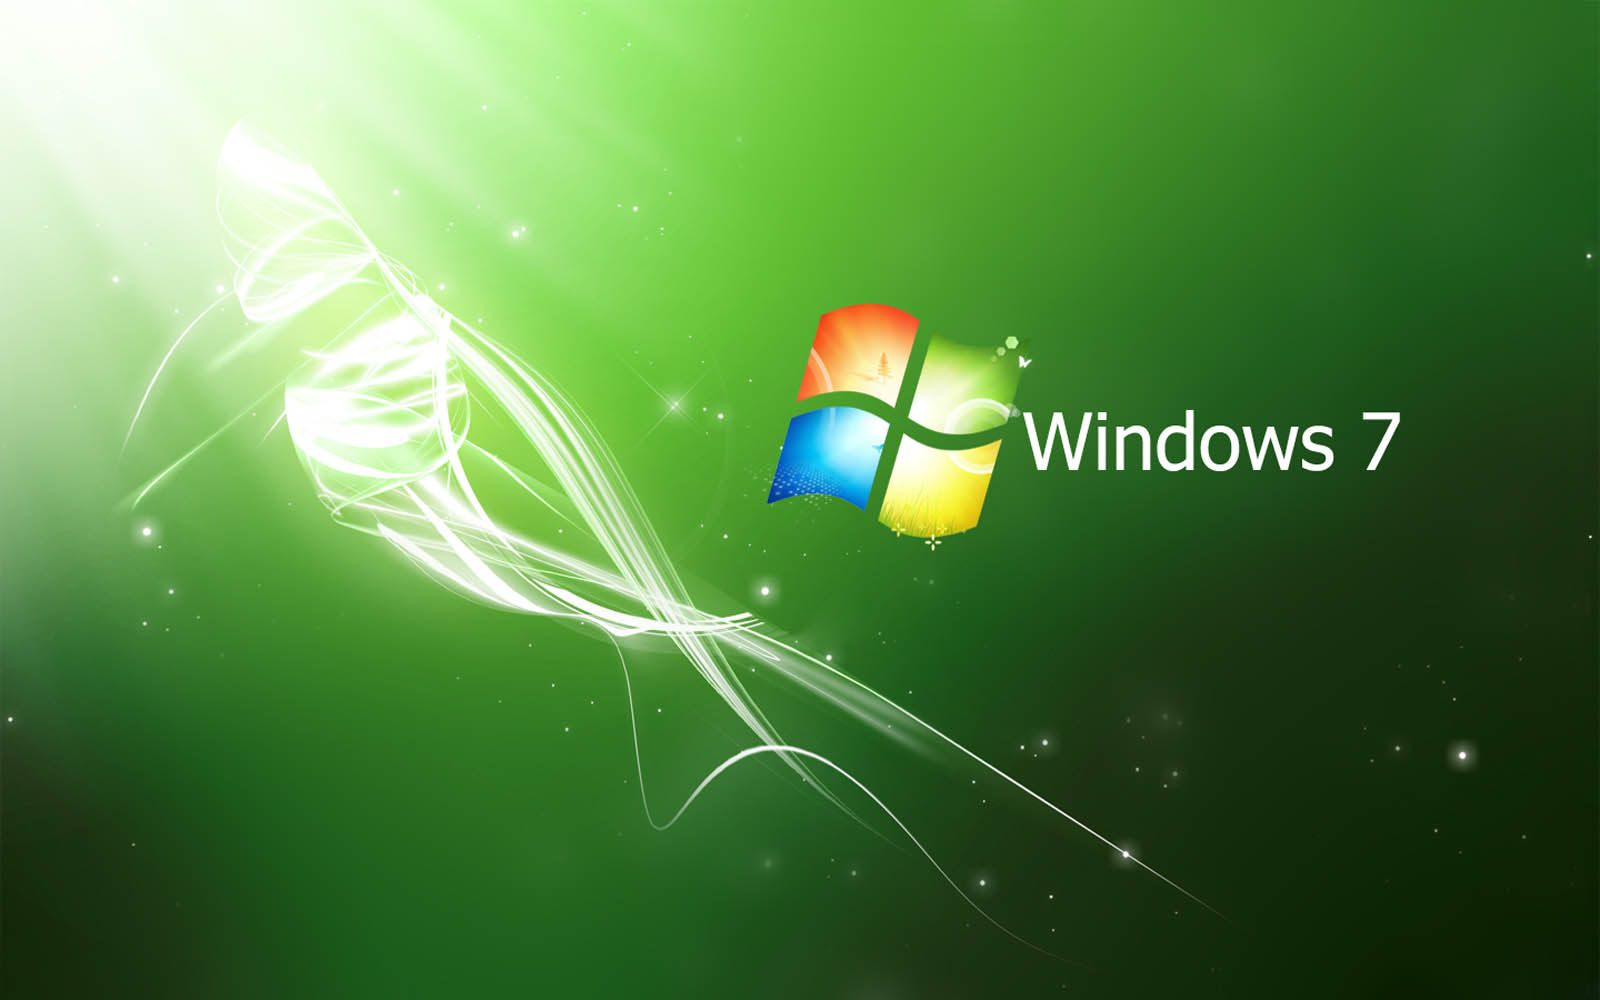 Hình nền Desktop Windows 7 miễn phí: Chào đón sự đổi mới trên desktop của bạn với những hình nền Desktop Windows 7 miễn phí đẹp mắt. Tất cả các tác phẩm đều được thiết kế với độ tinh tế cao, mang đến cho bạn trải nghiệm tuyệt vời nhất mỗi khi sử dụng máy tính.